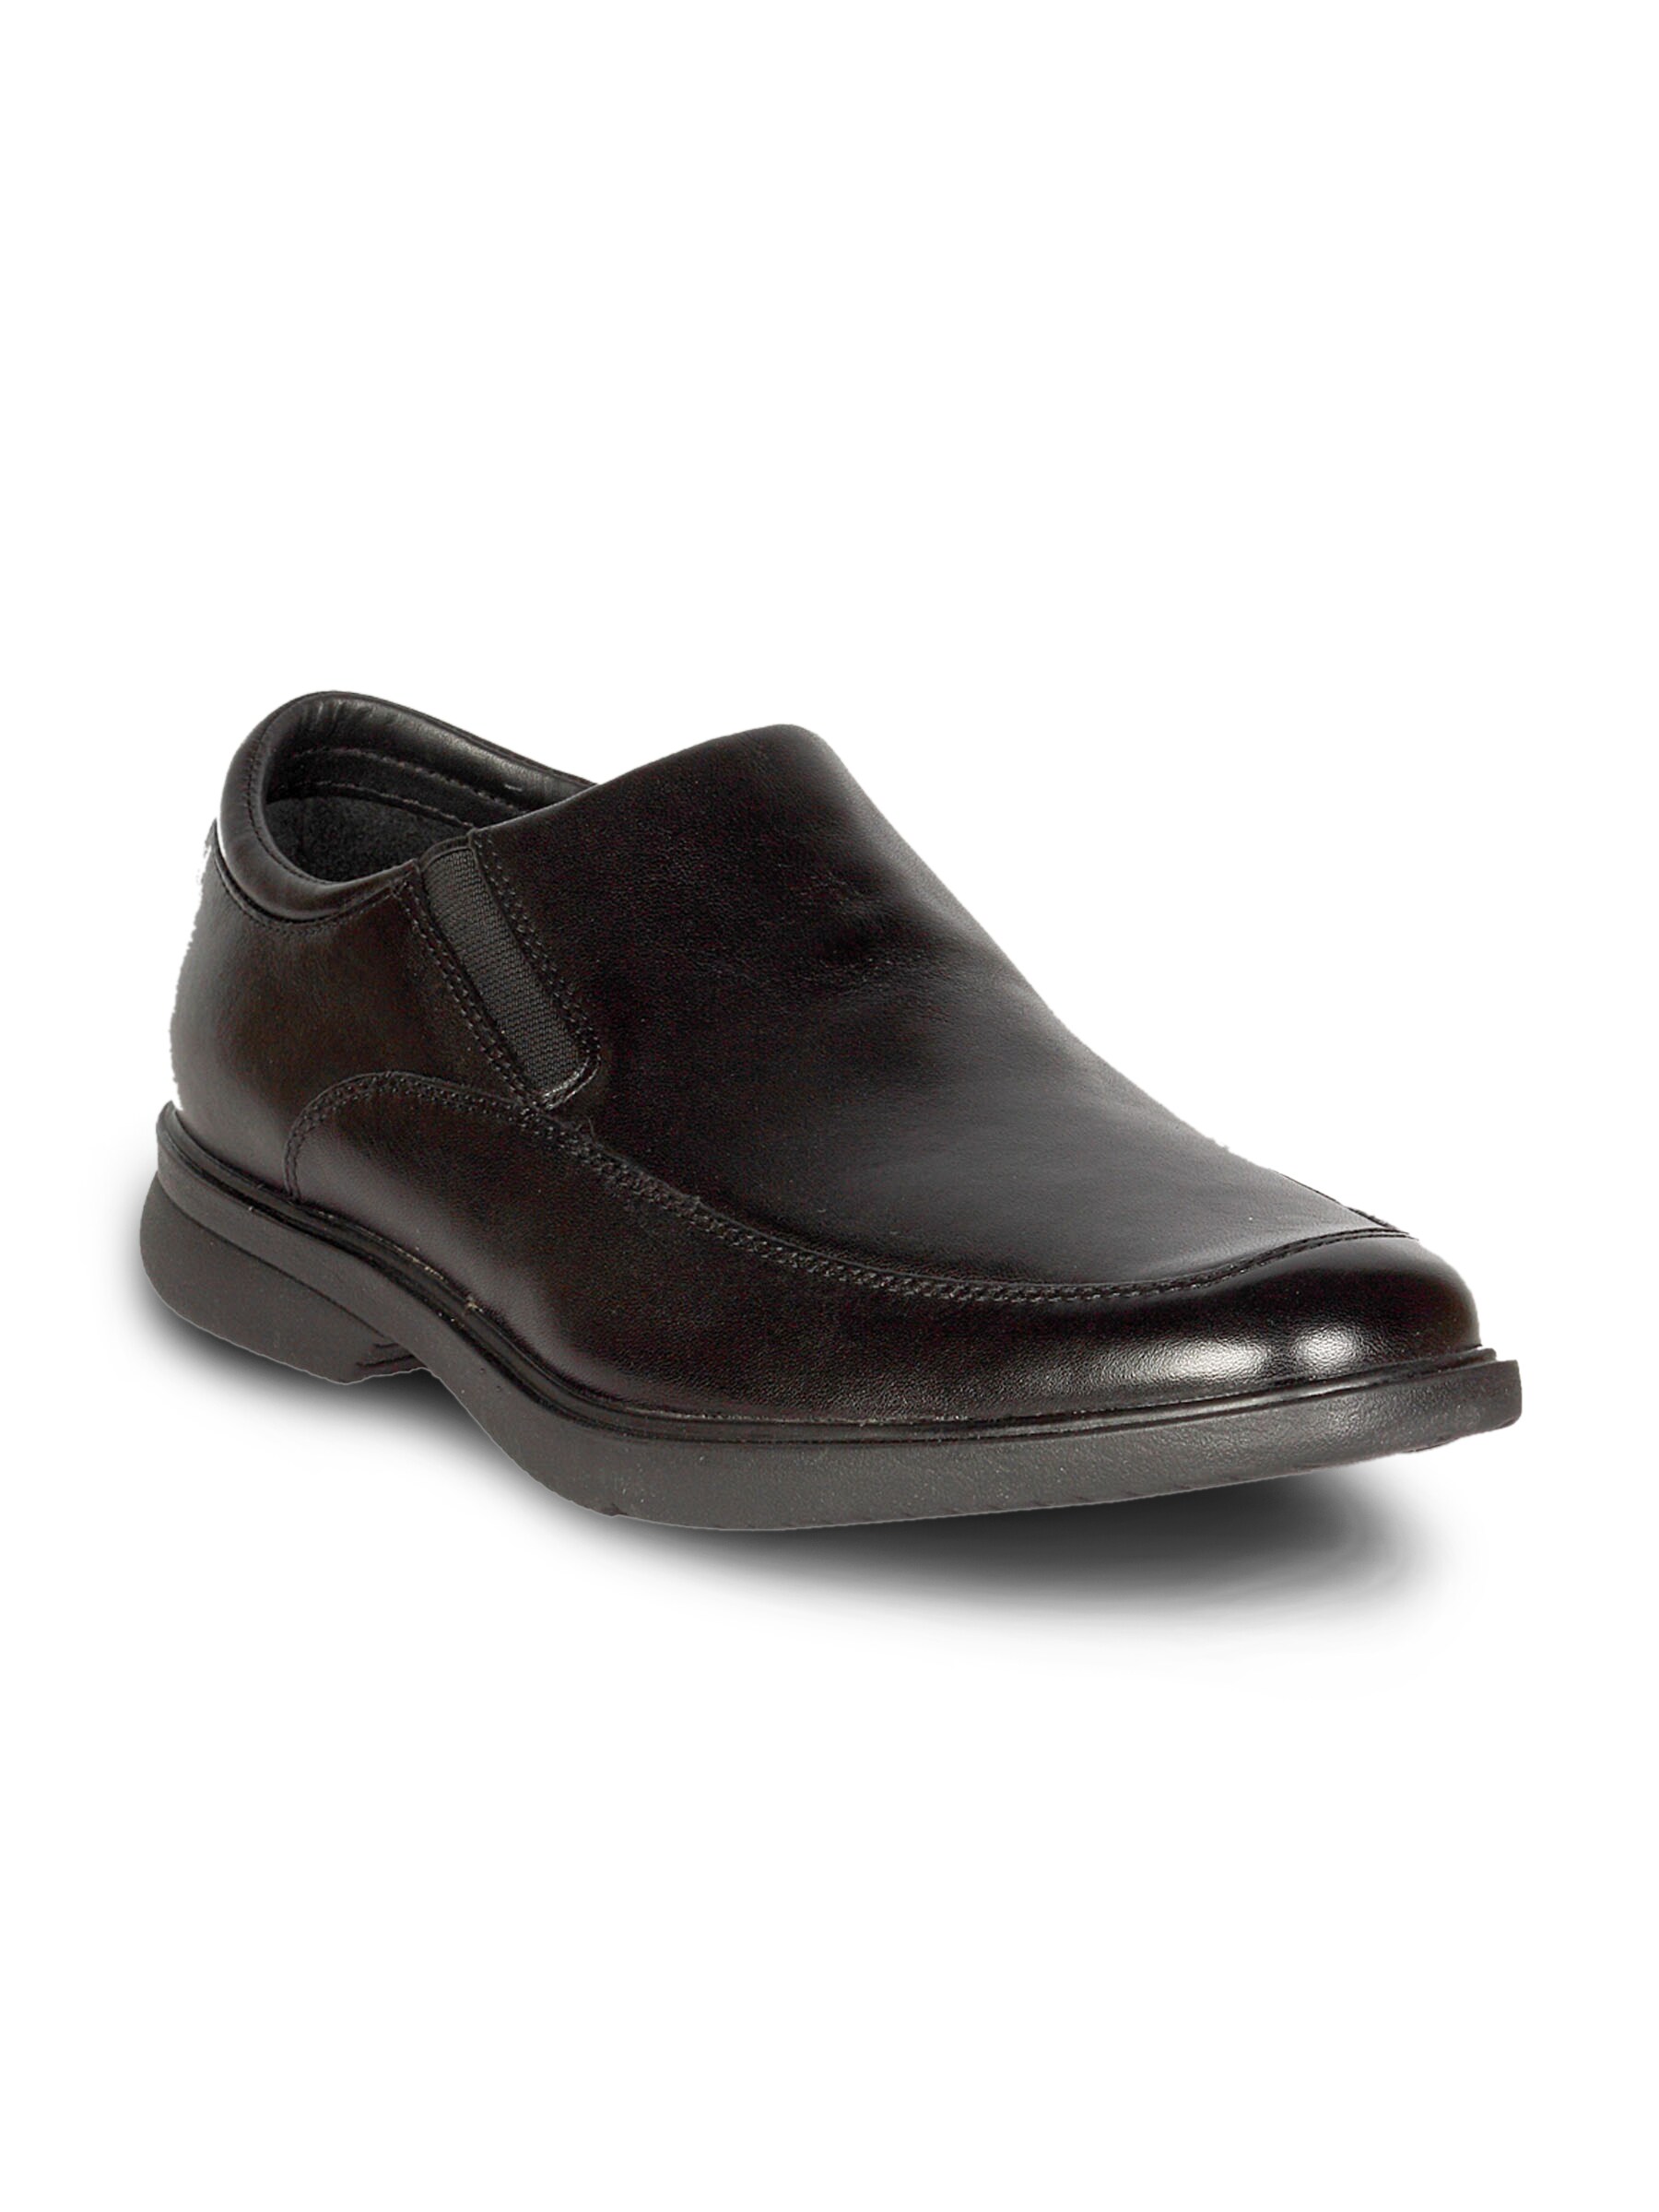 Rockport Men's Aderner Black Shoe